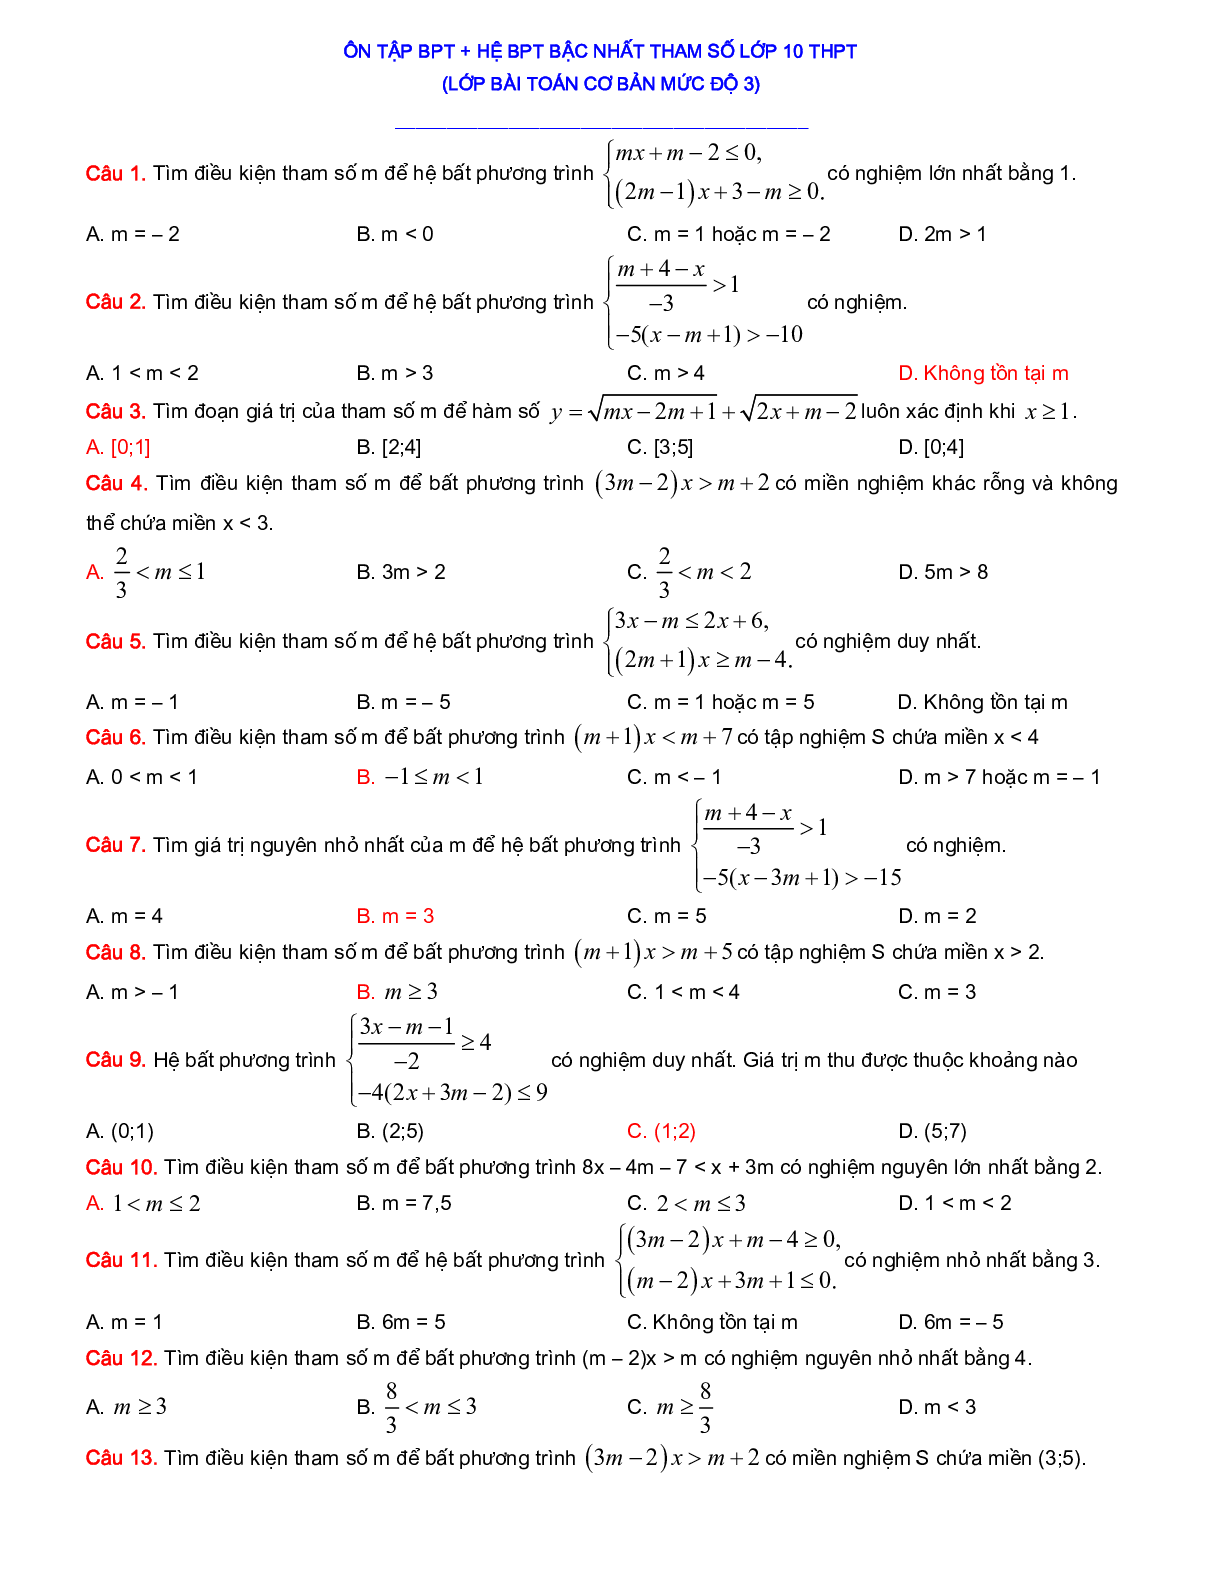 200 Bài tập Bất phương trình - Hệ bất phương trình 2023 có đáp án, chọn lọc (trang 5)